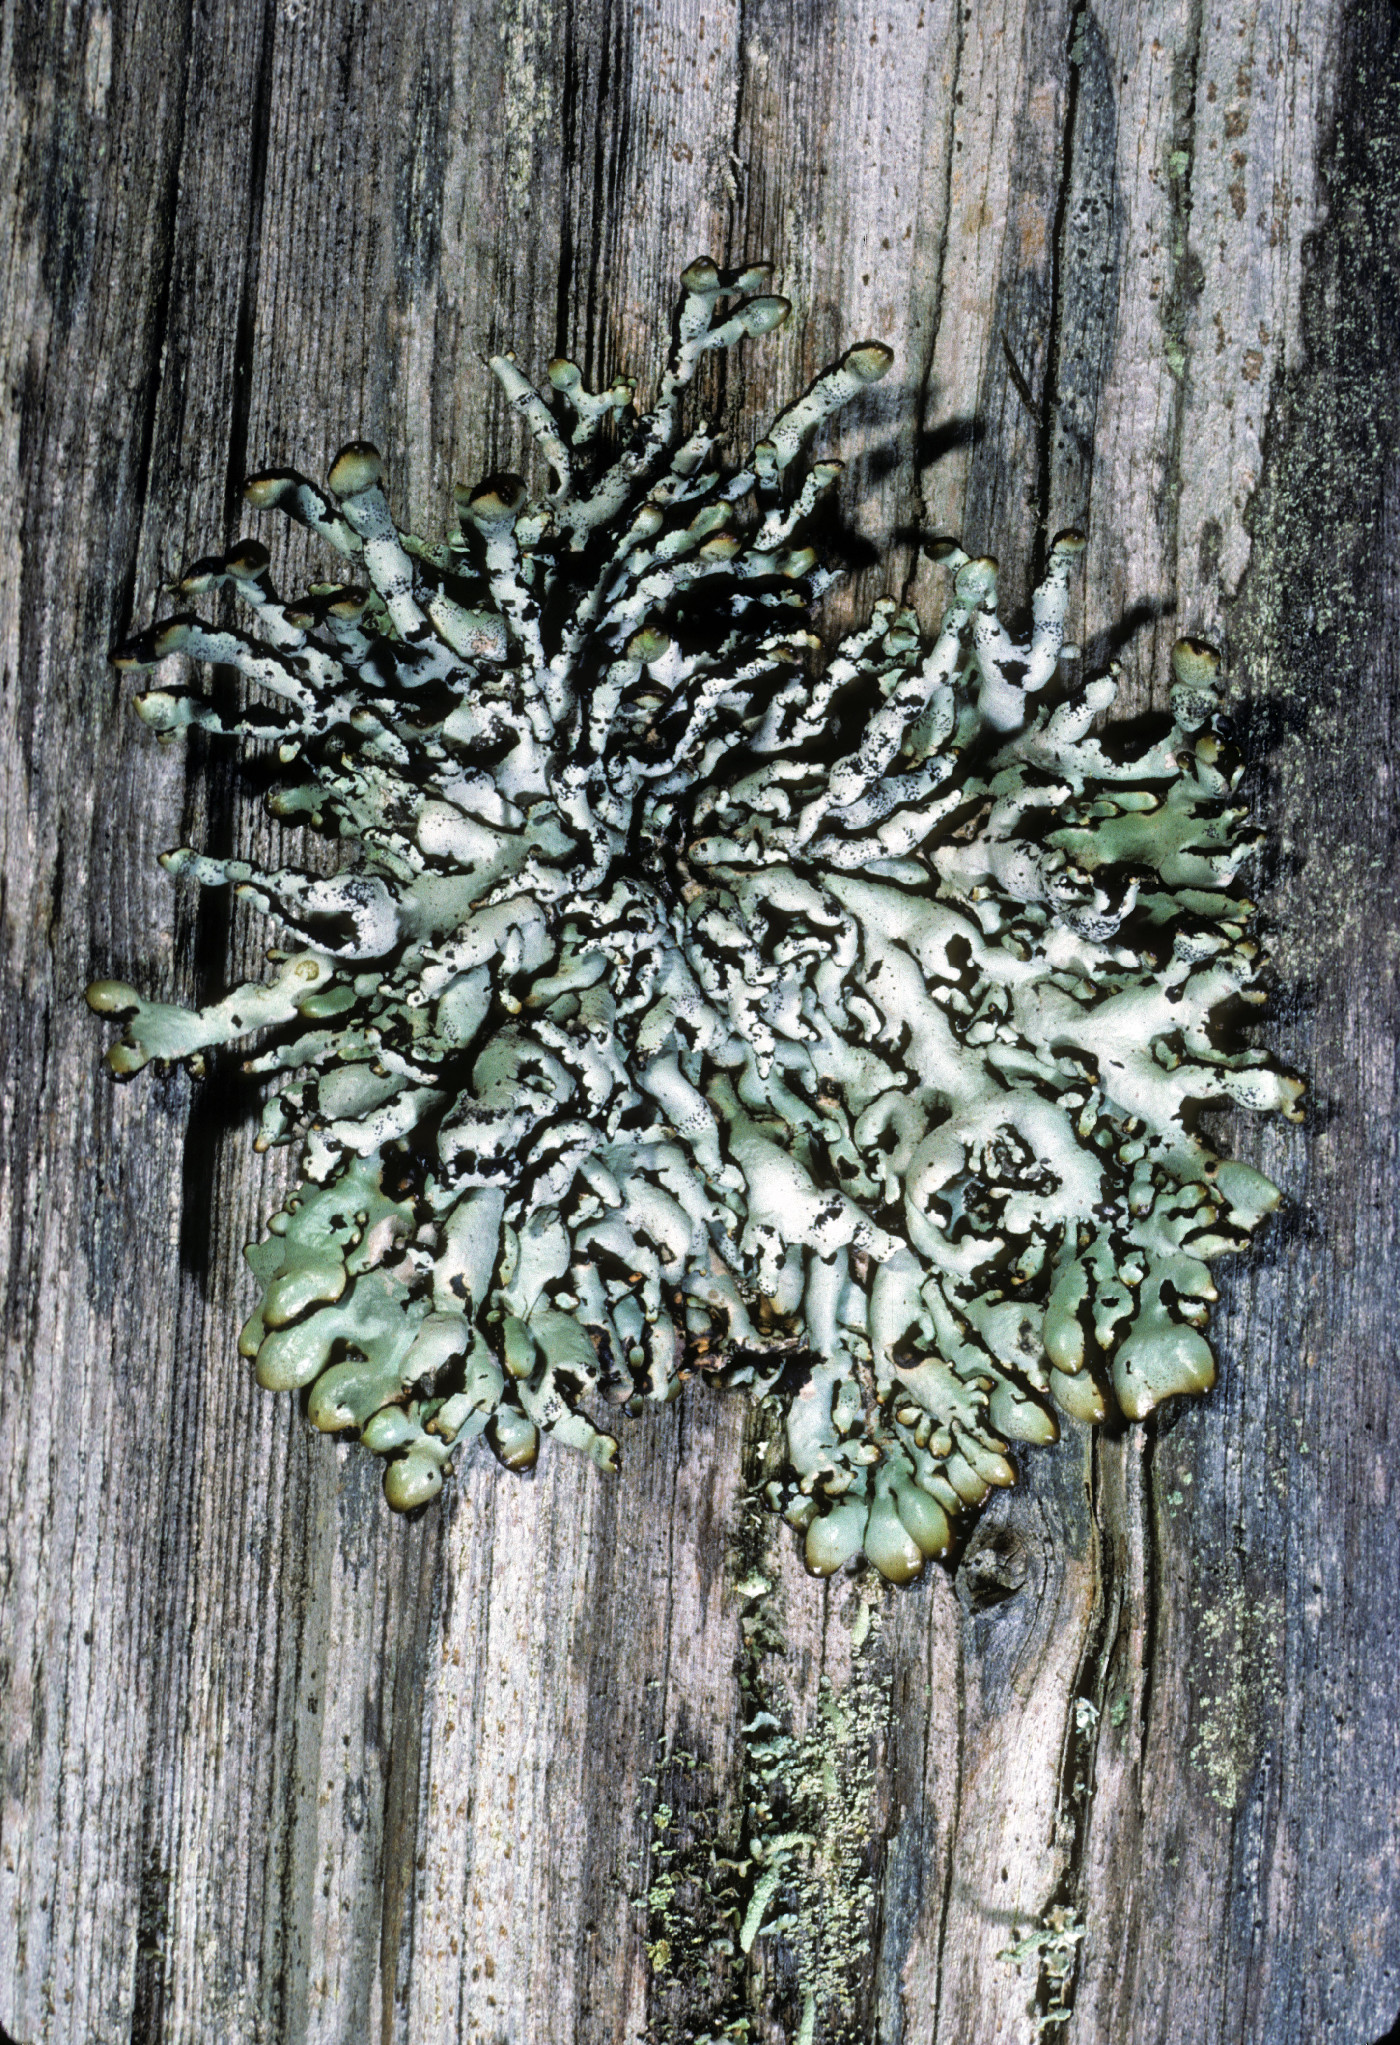 Hypogymnia enteromorpha image